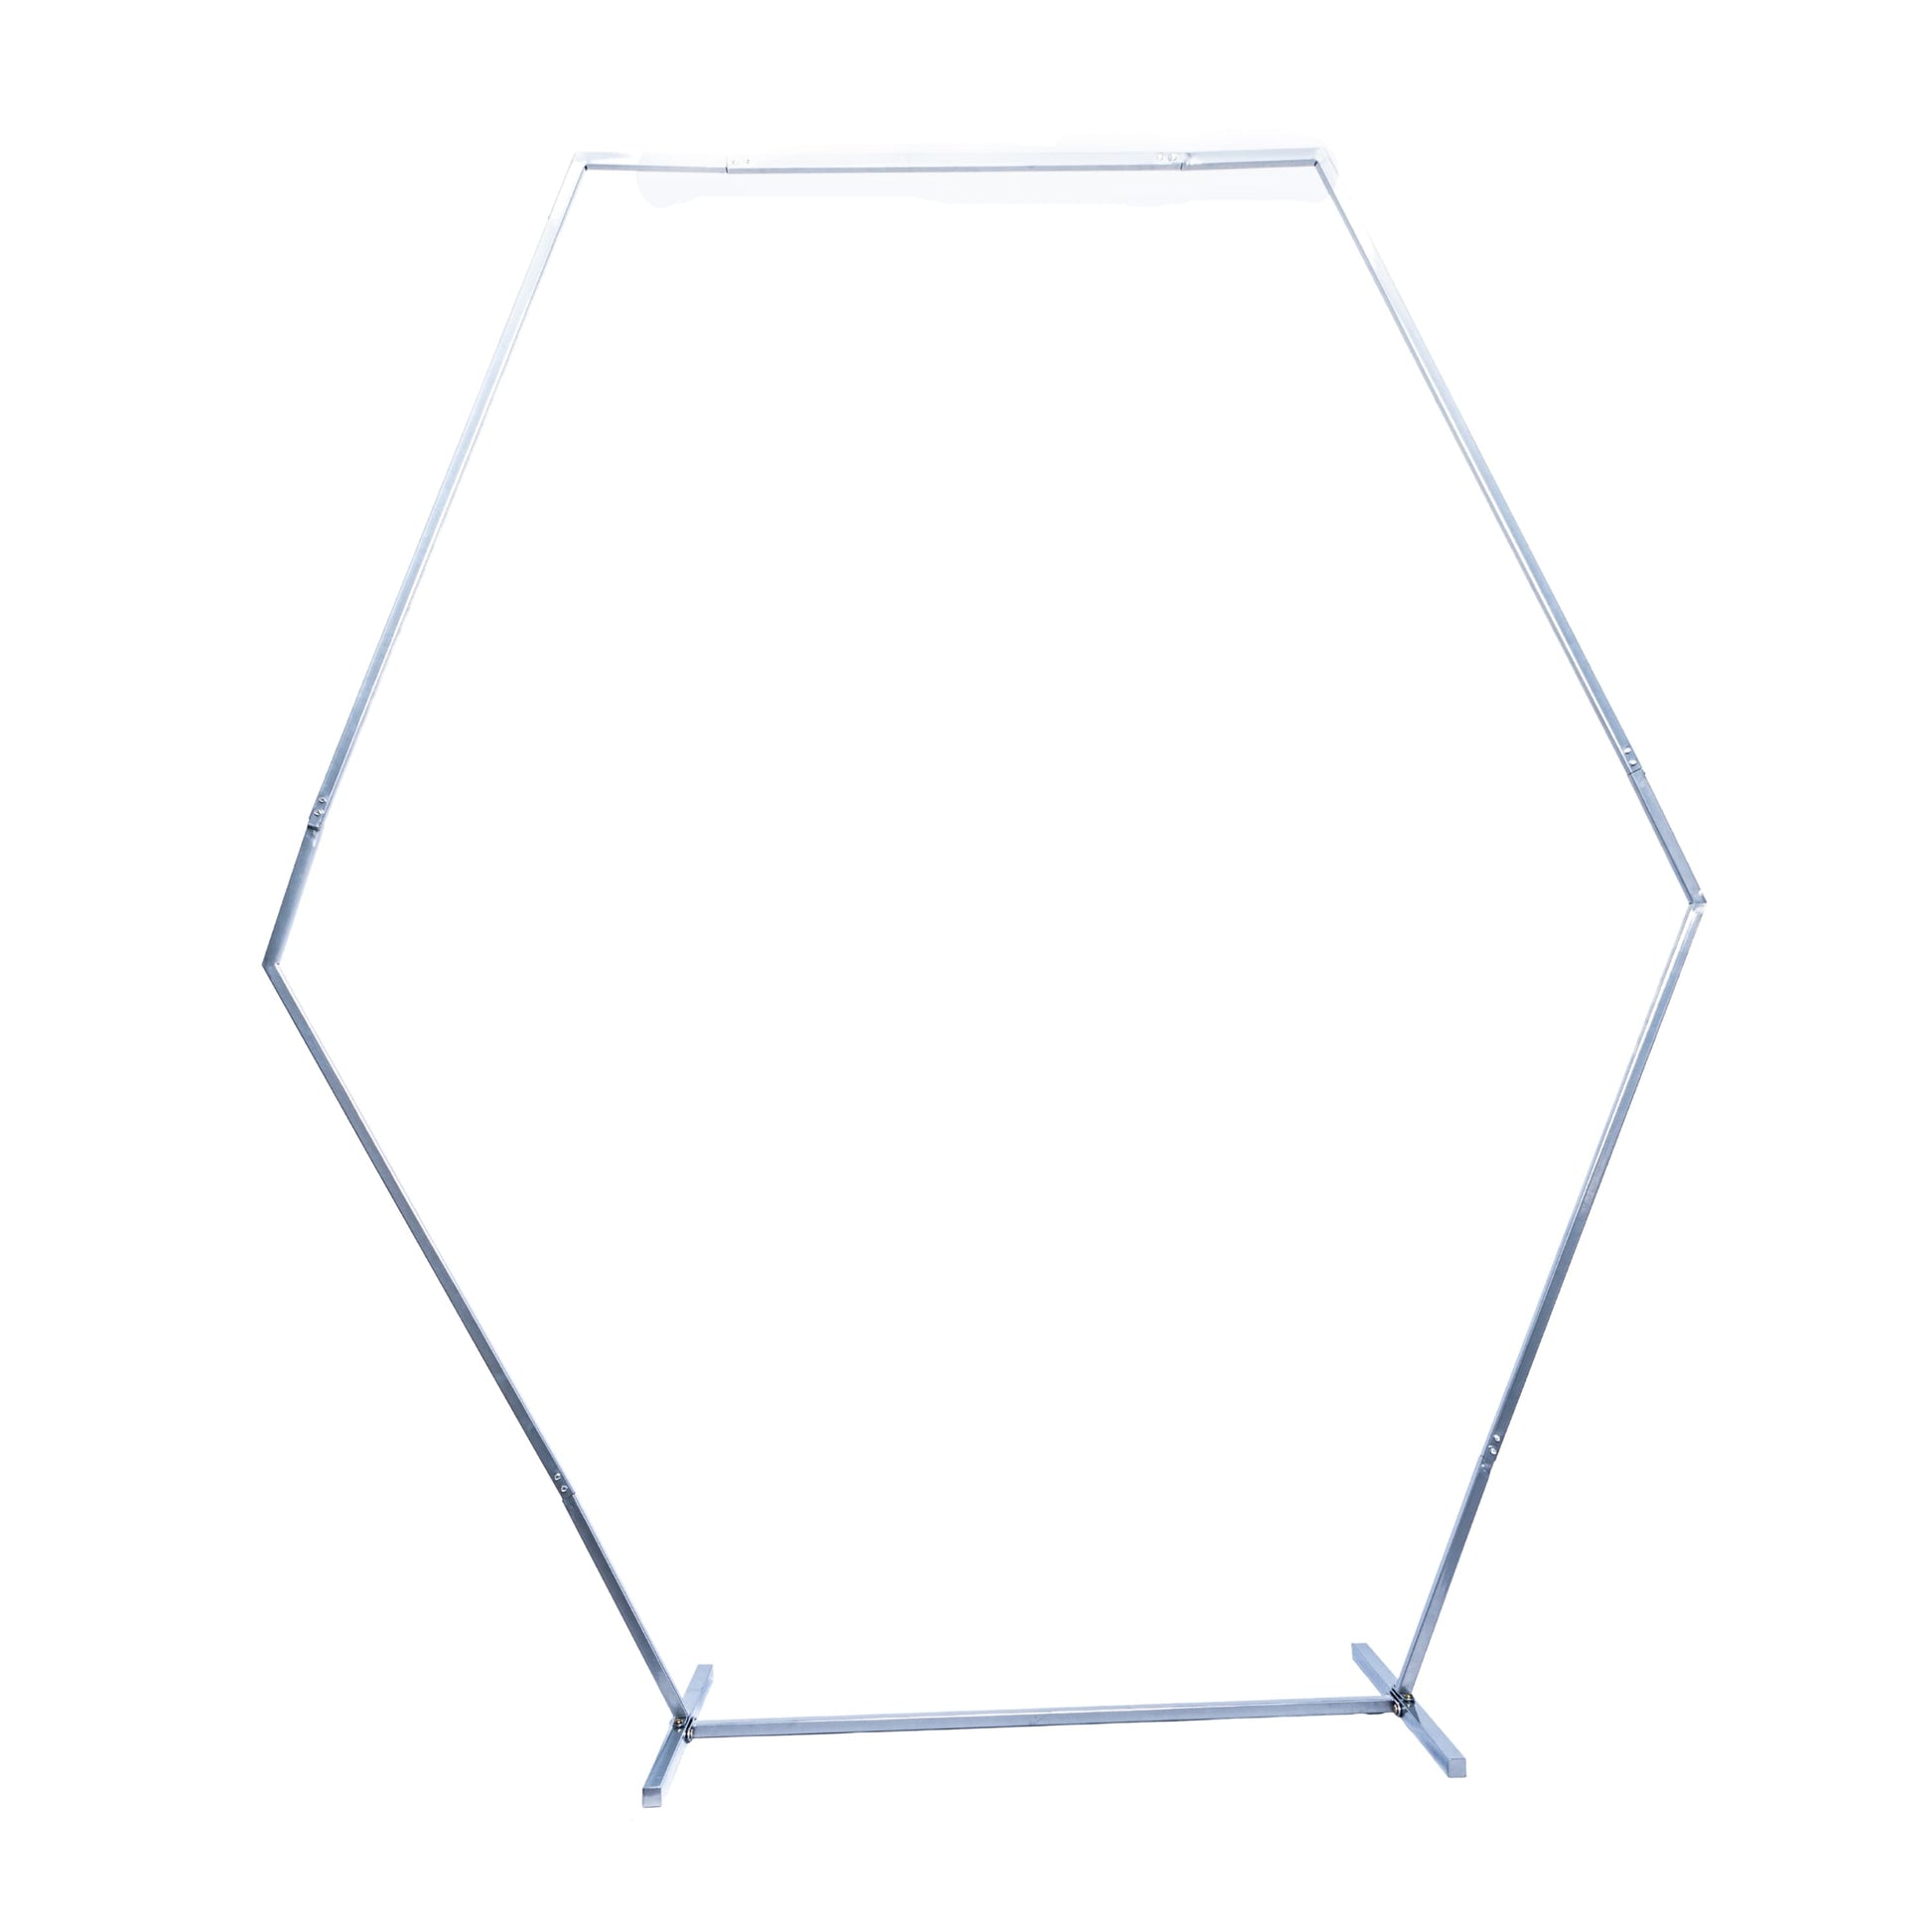 Hexagon Wedding Arch Backdrop Frame Stand 8 ft - Silver - CV Linens